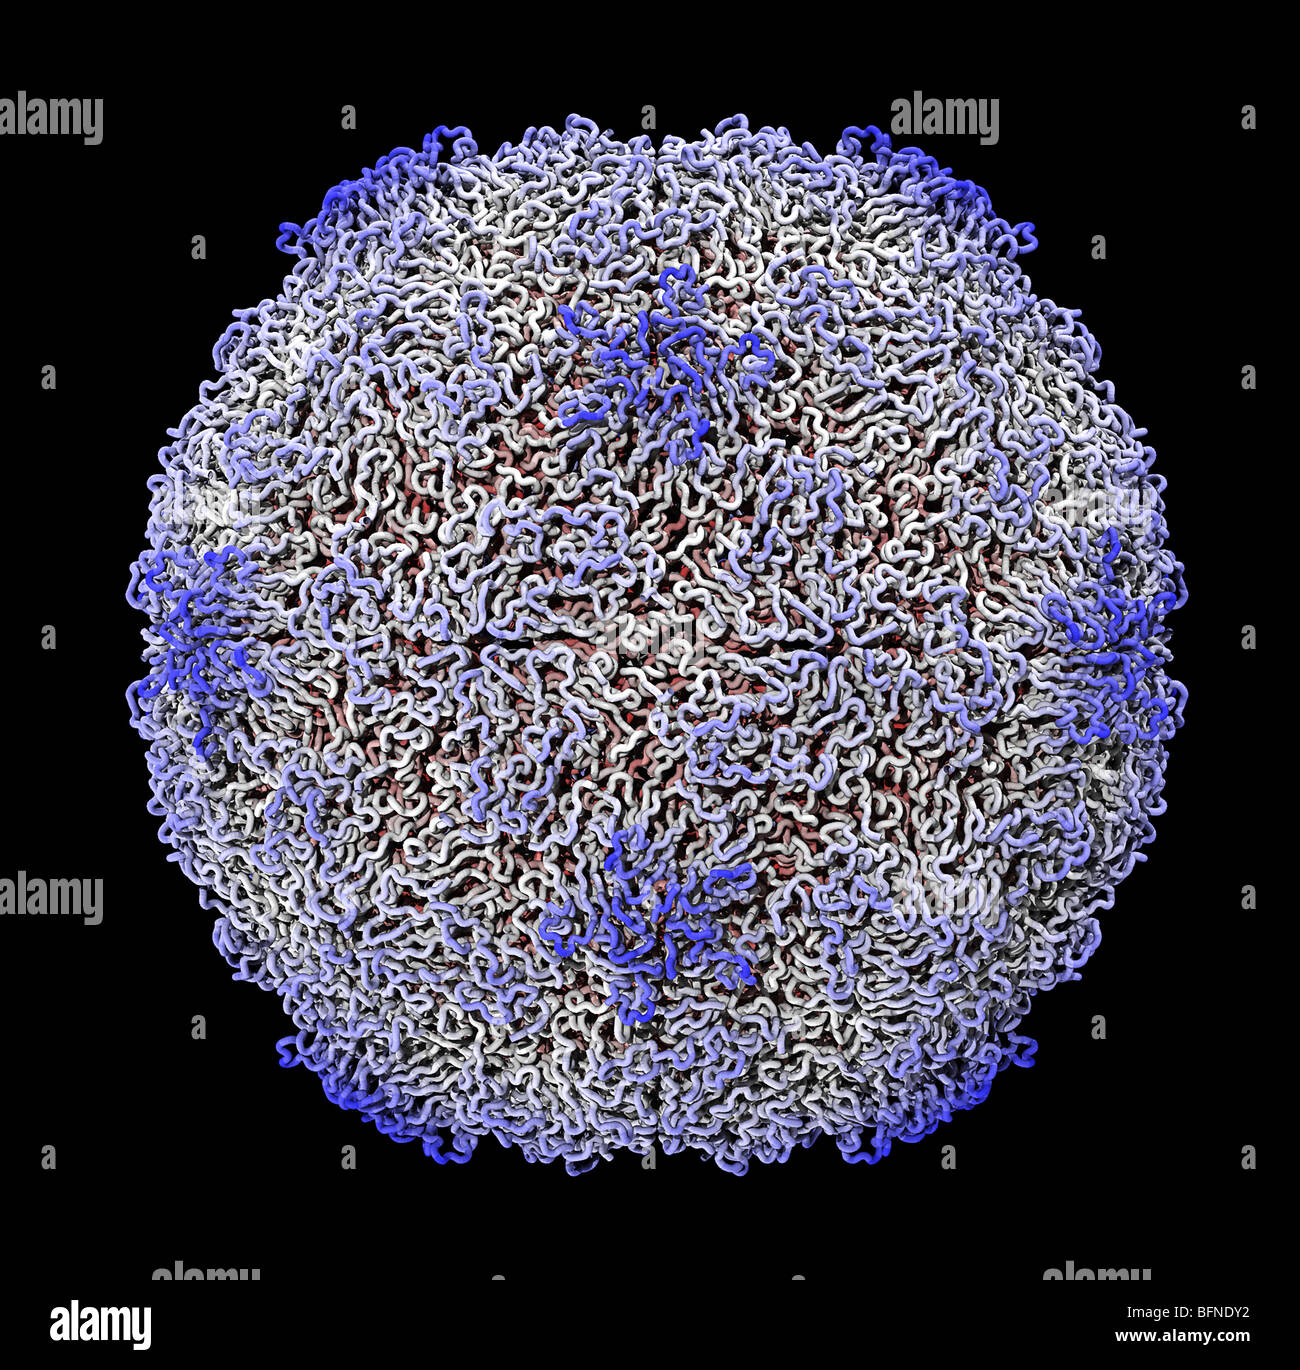 Menschlichen Rhinovirus Kapsid Struktur. Drei dimensionale Computer generierte Modell auf der Grundlage der experimentell ermittelten Daten Stockfoto